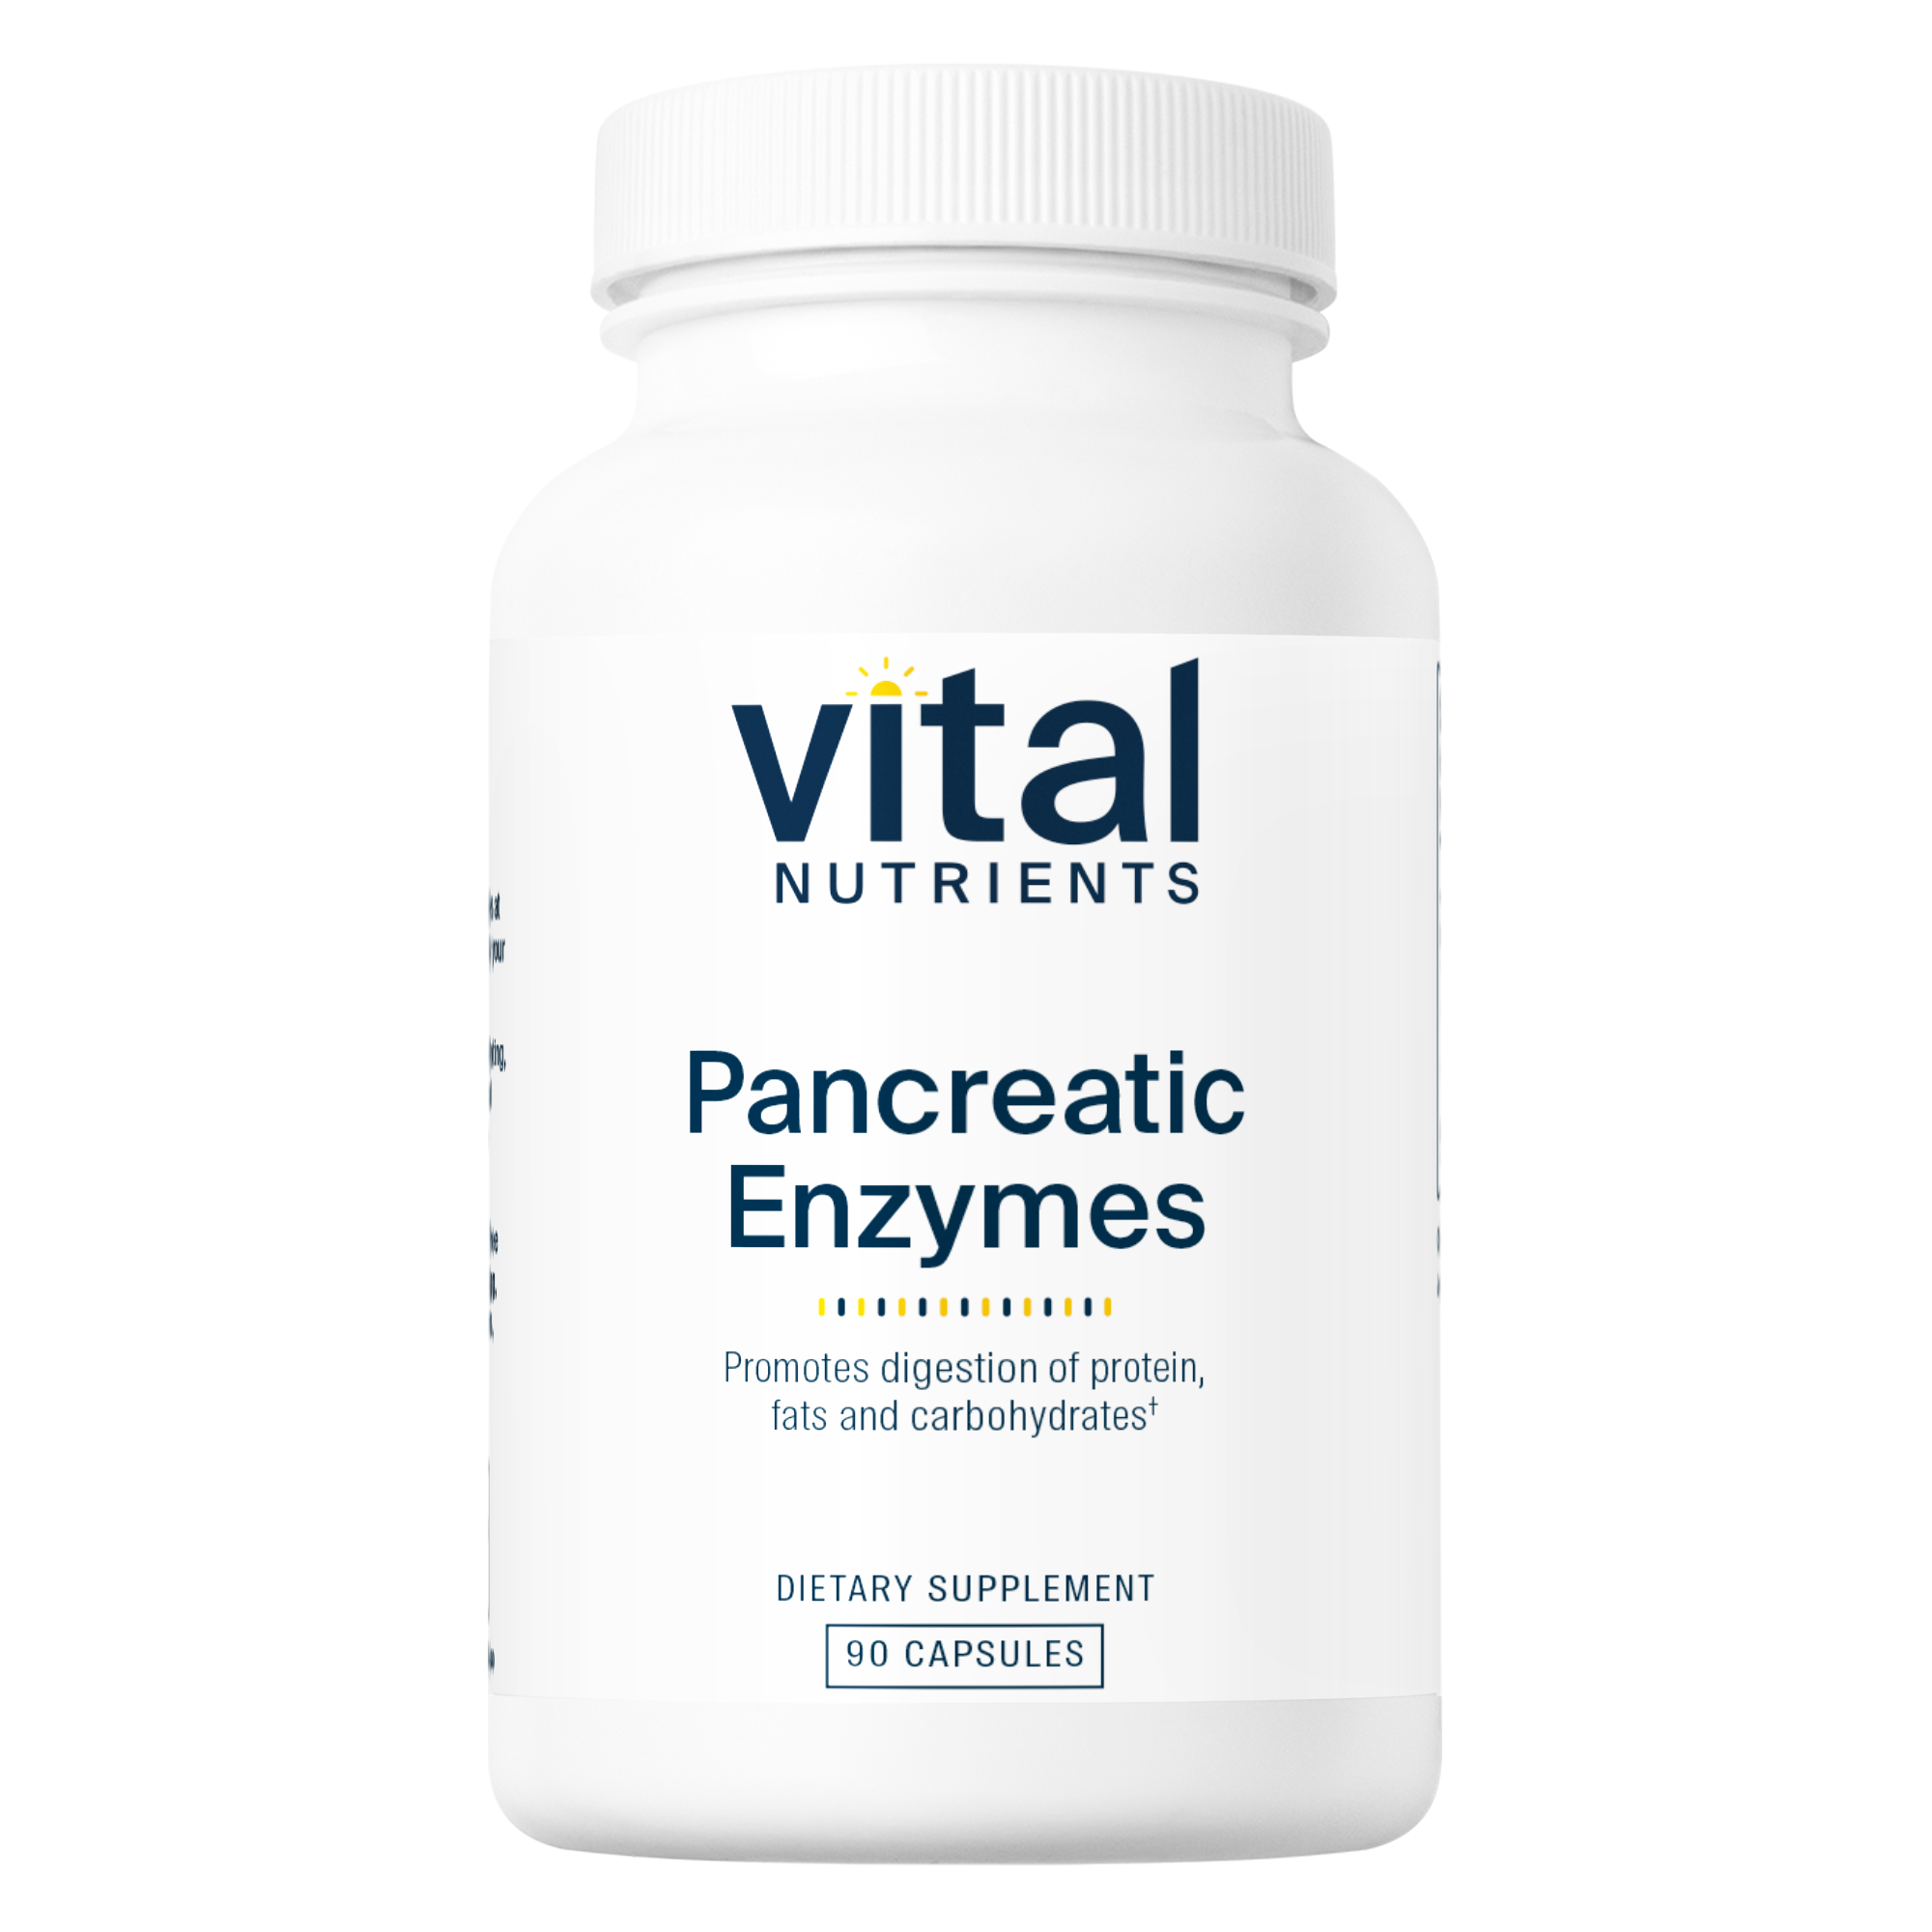 Vital Nutrients Pancreatic Enzymes 90 capsule bottle image.